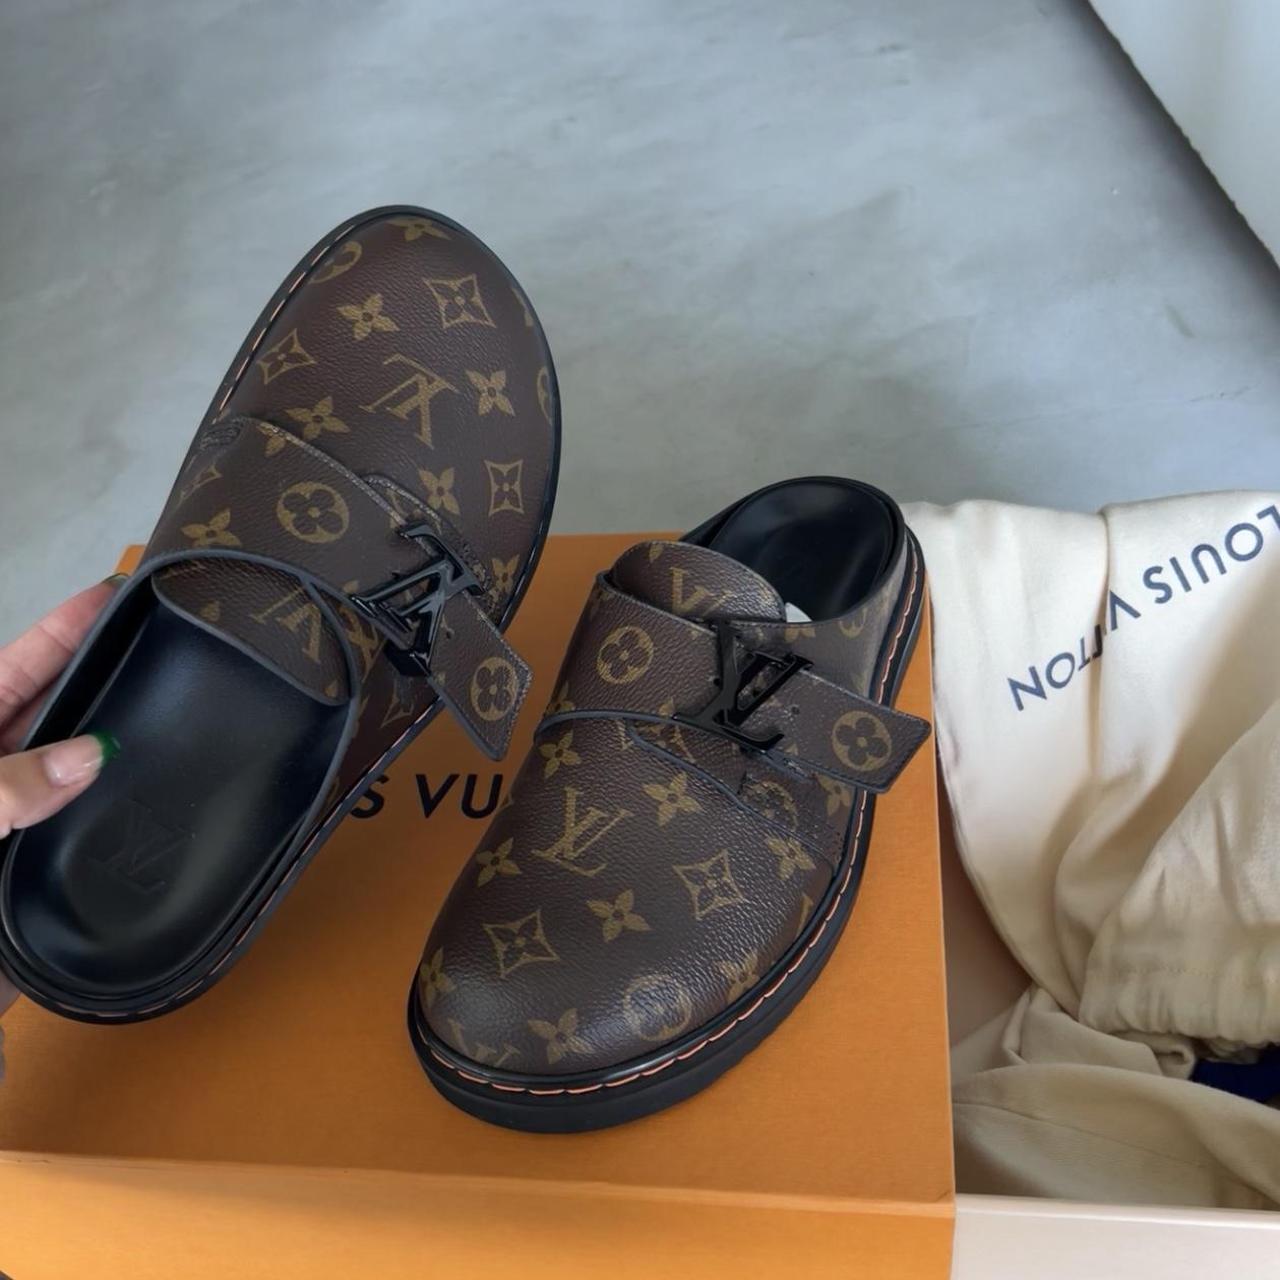 Men's Louis Vuitton Shoes, Preowned & Secondhand